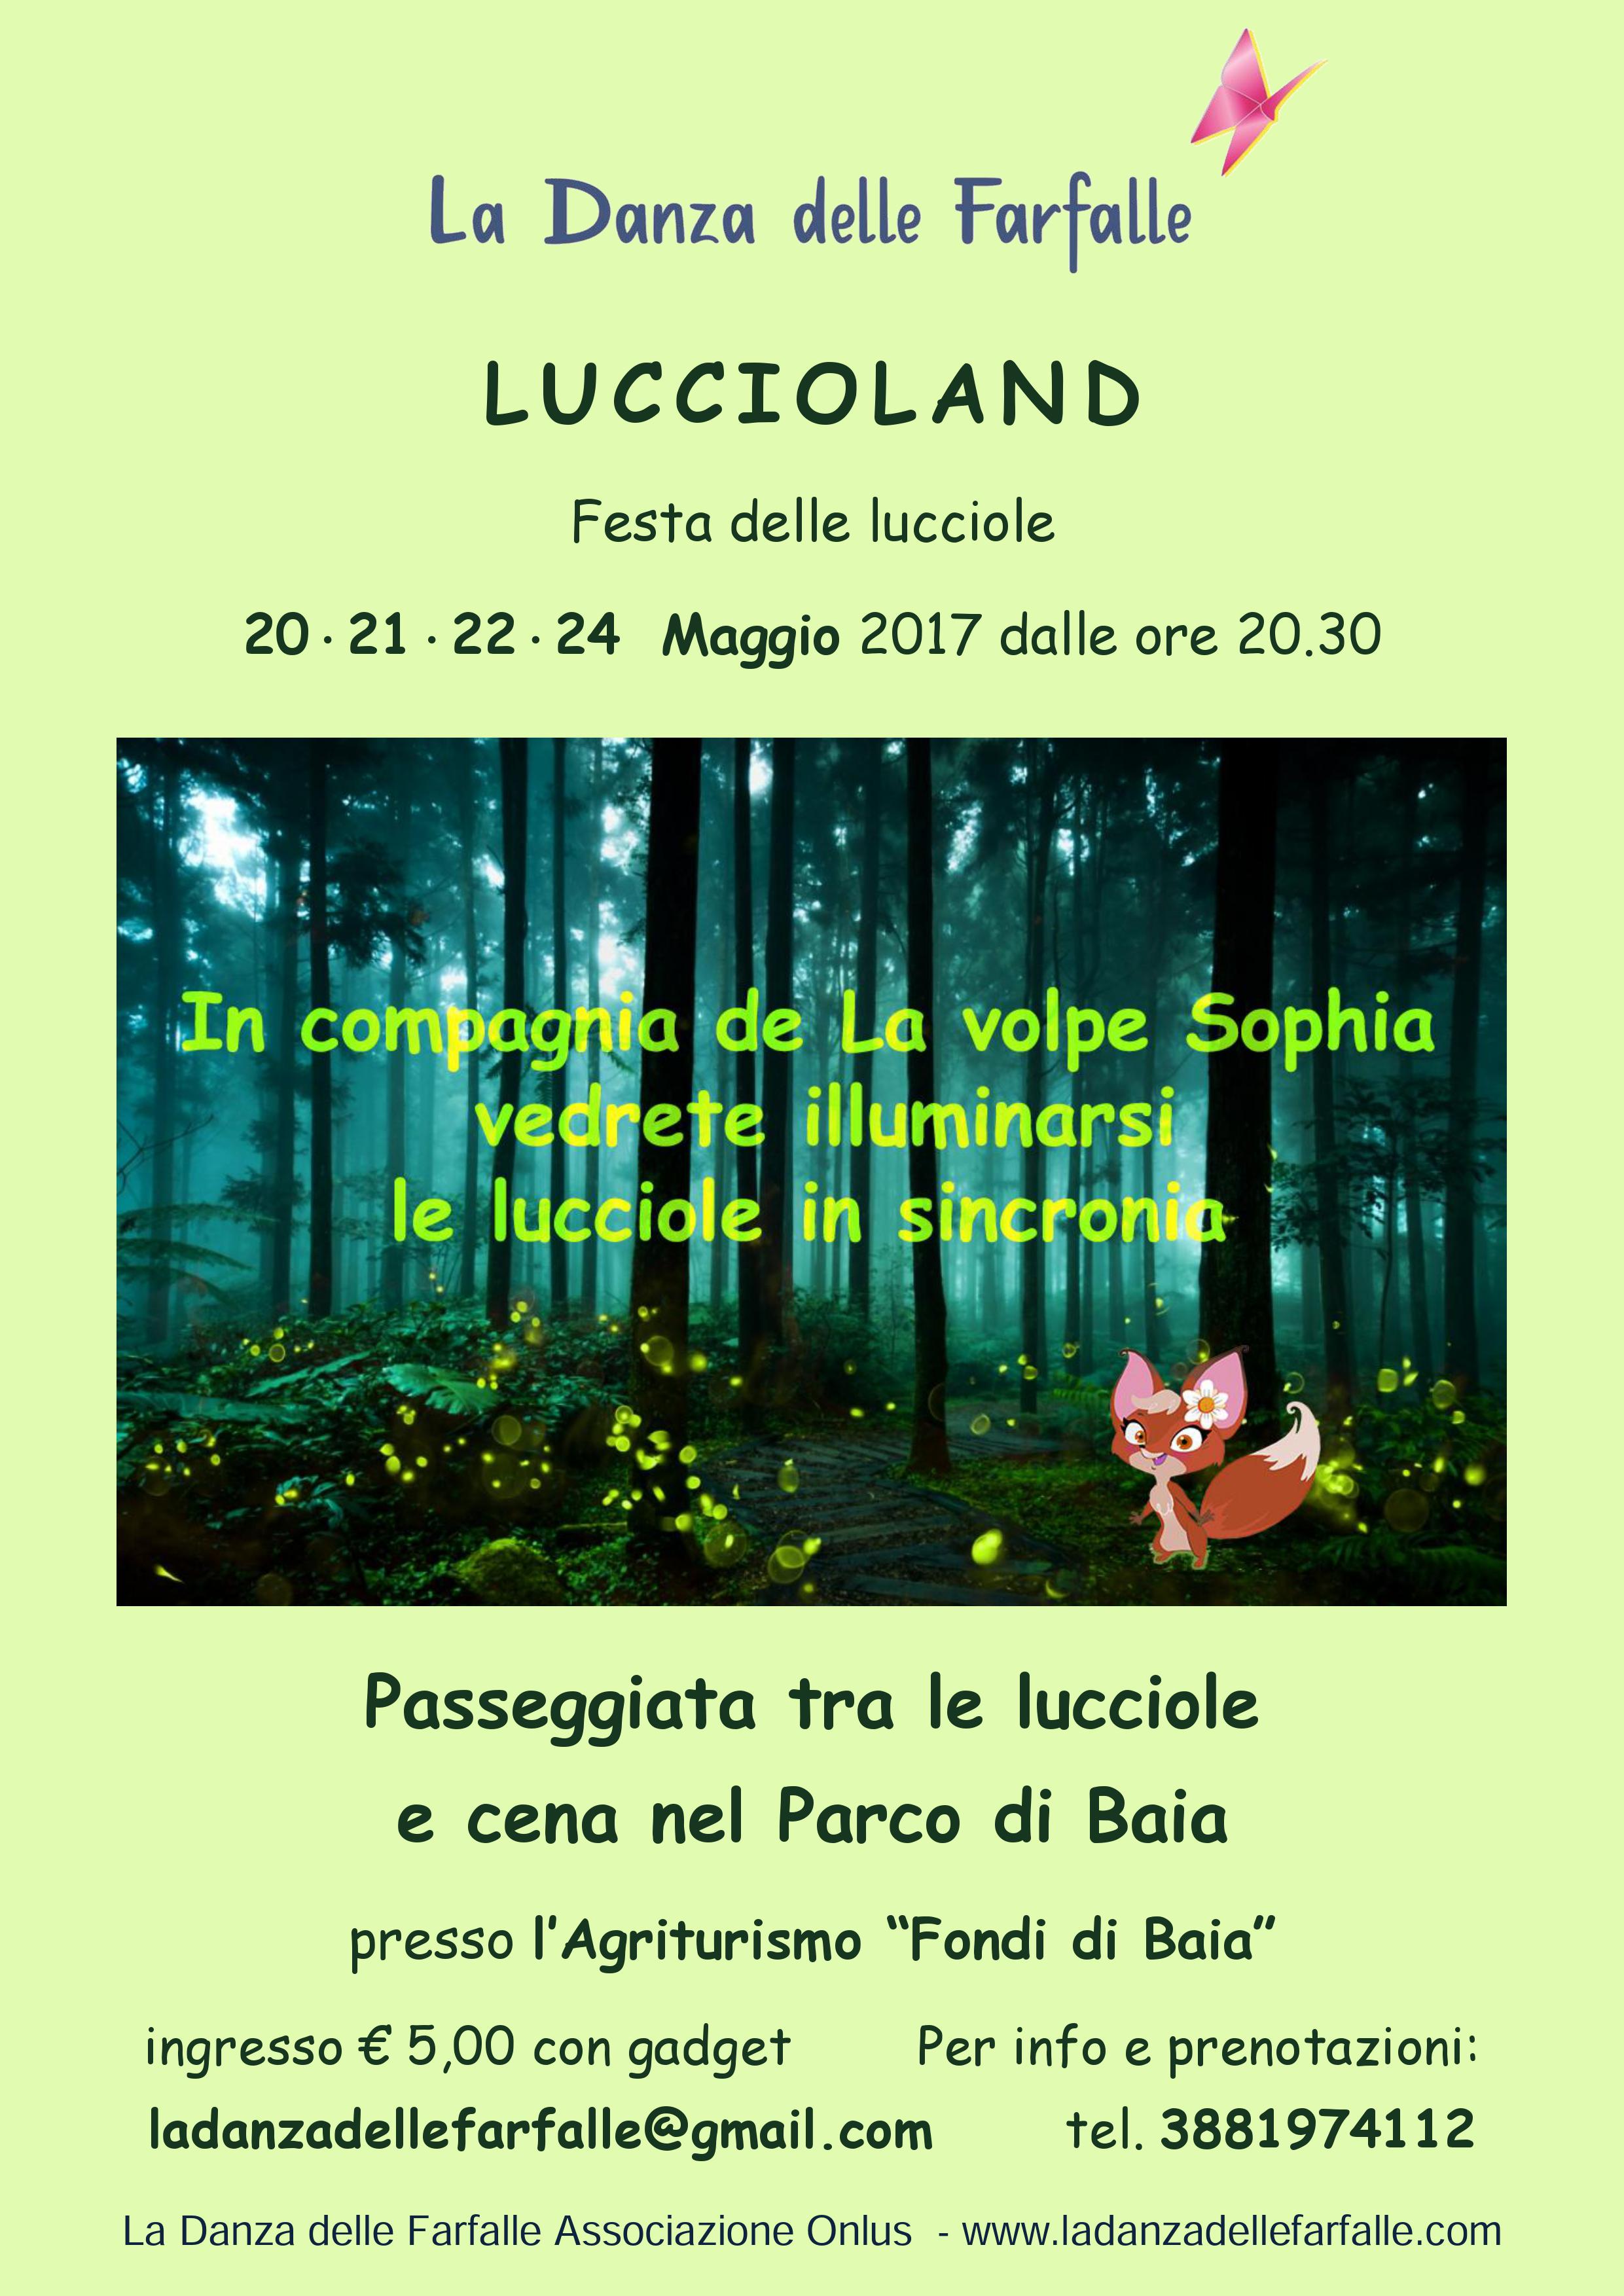 Luccioland-Parco-di-Baia Maggio 2017 attuale